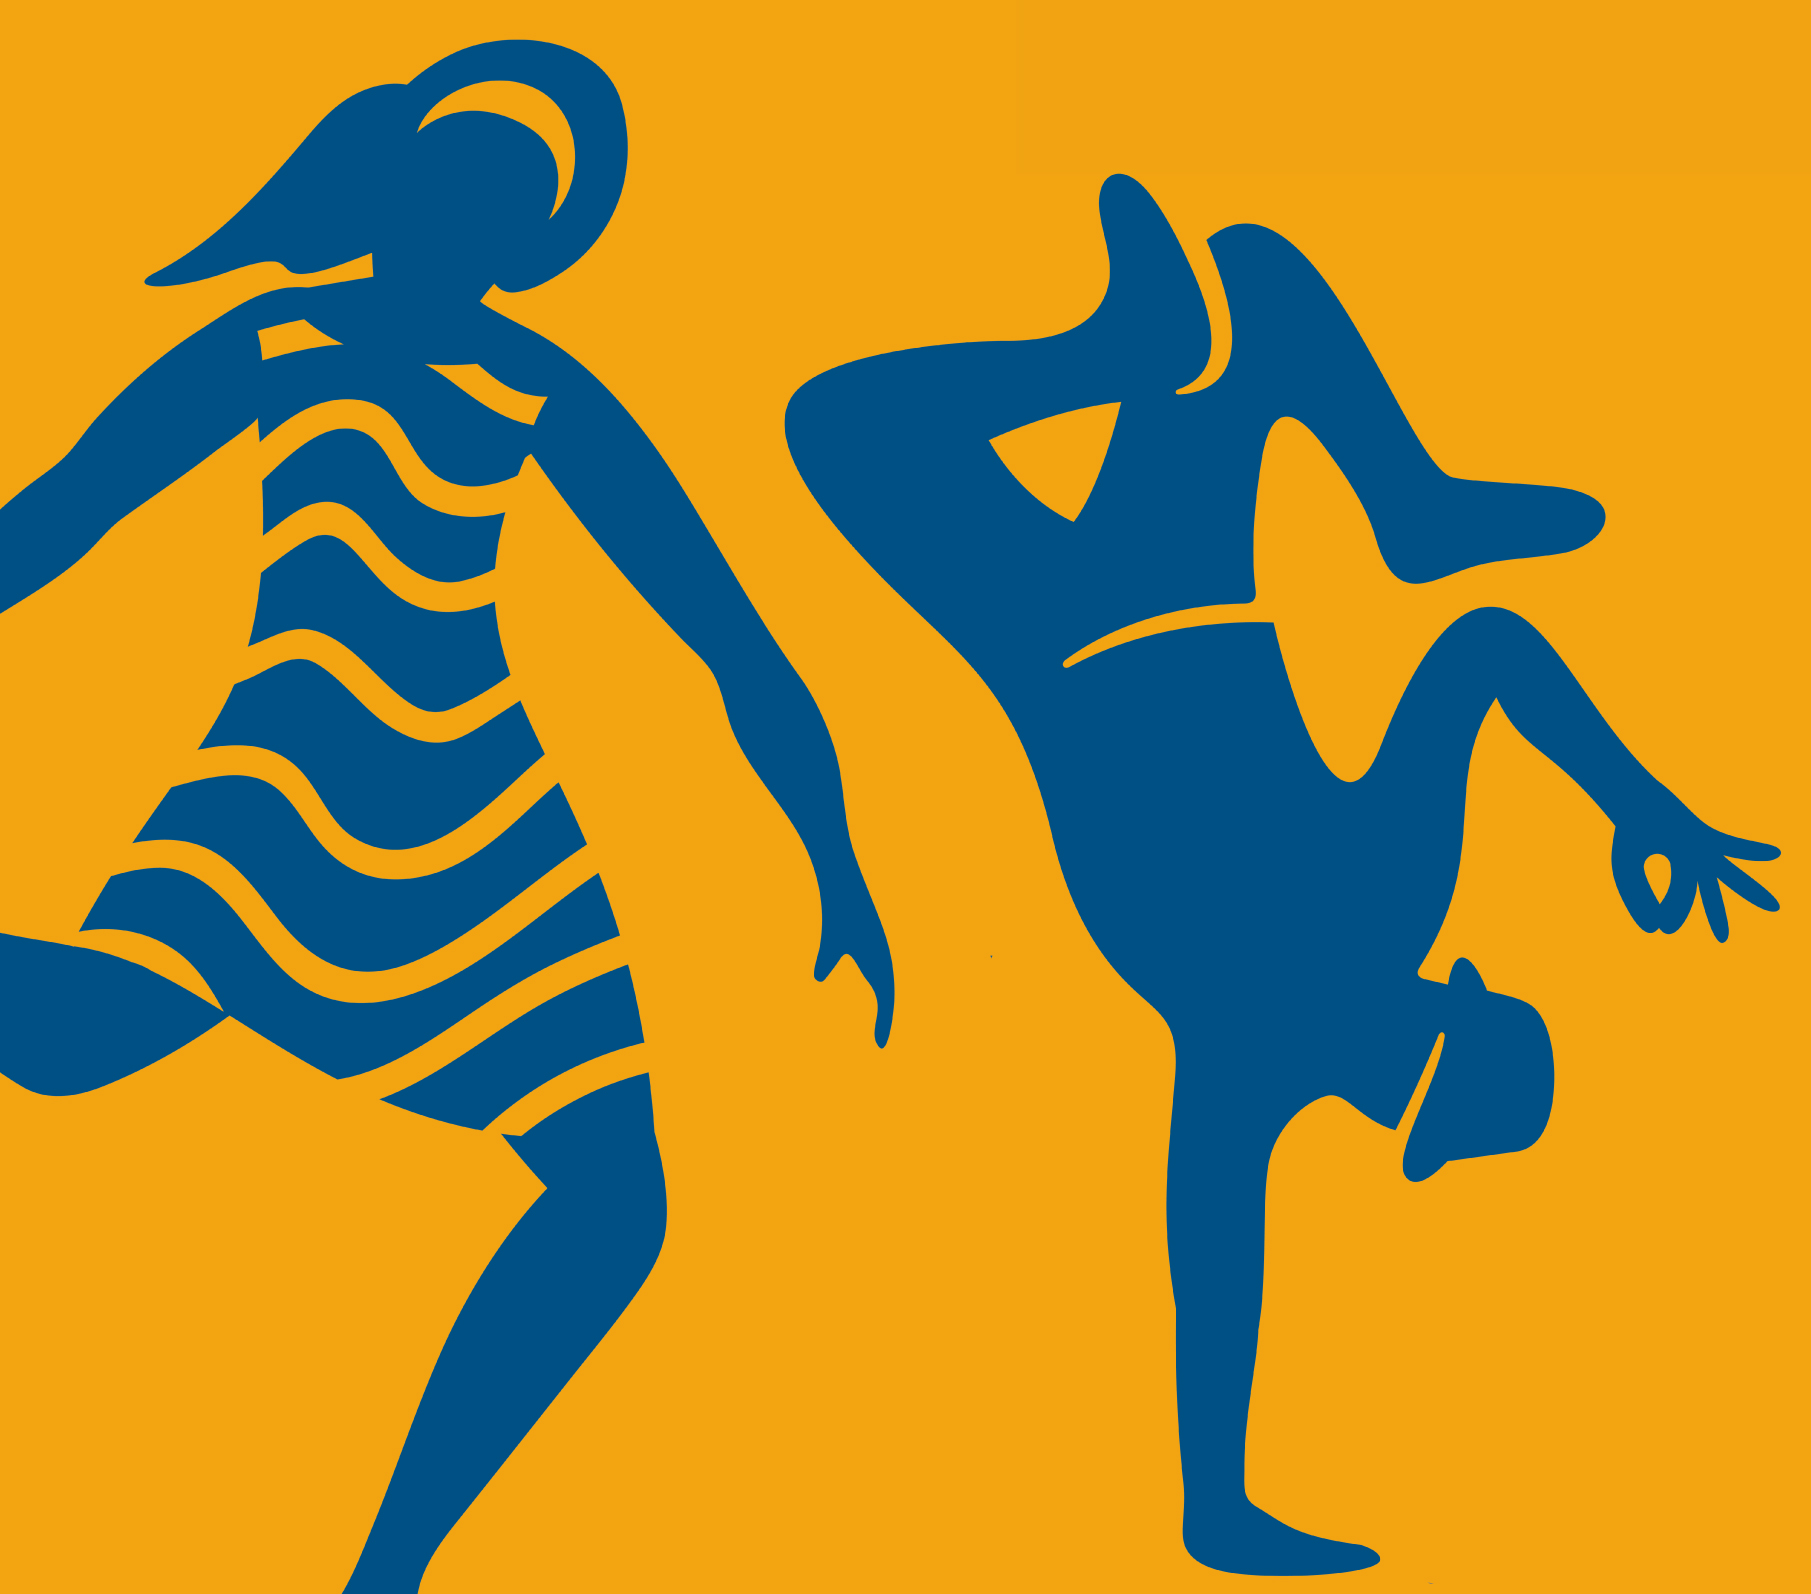 Hier sieht man zwei tanzende Figuren in blau. Eine trägt ein Kleid, einer macht eine Breakdance-Bewegung und trägt einen Hut..